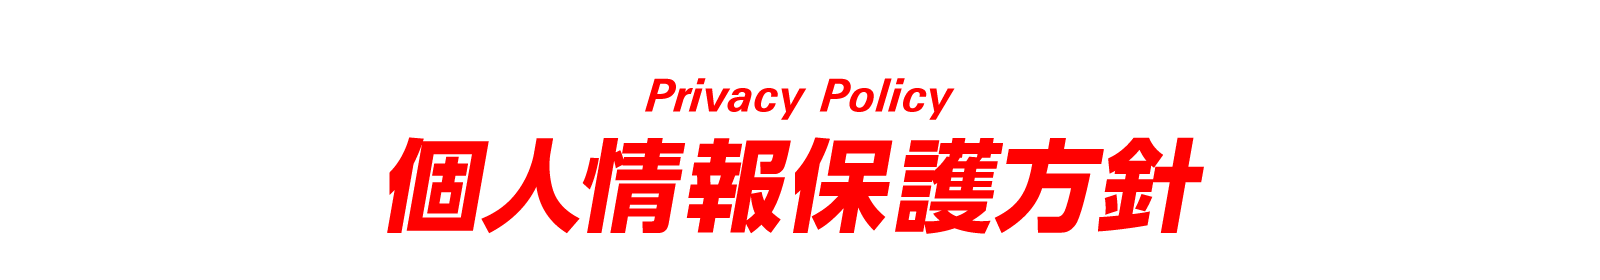 Privacy Policy 個人情報保護方針